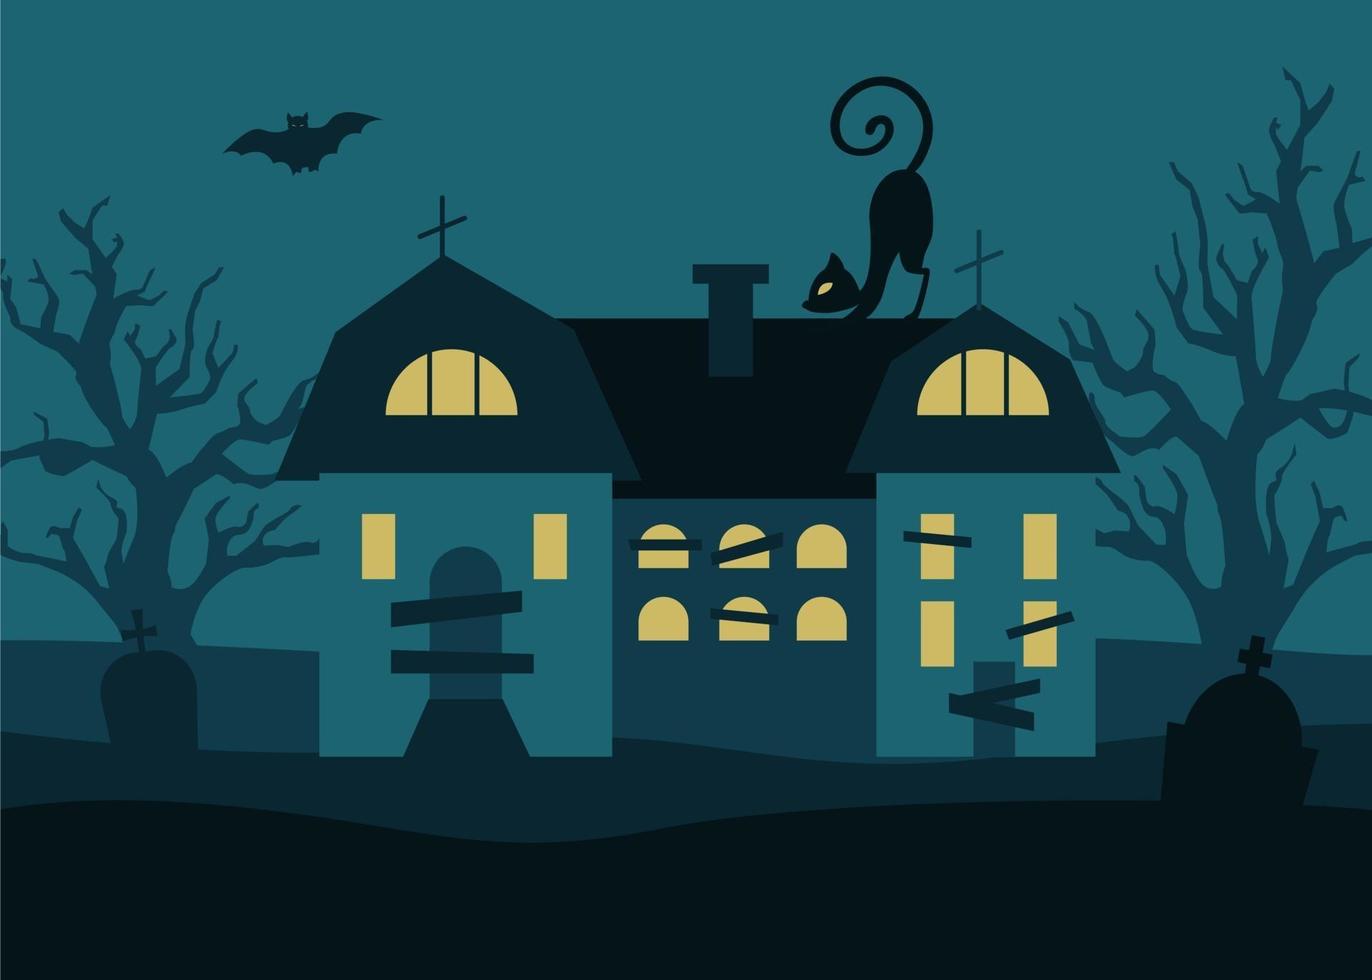 fond d'halloween avec maison sombre, arbres, pierres tombales de chat noir et chauves-souris sur fond de pleine lune. illustration vectorielle dans un style plat vecteur